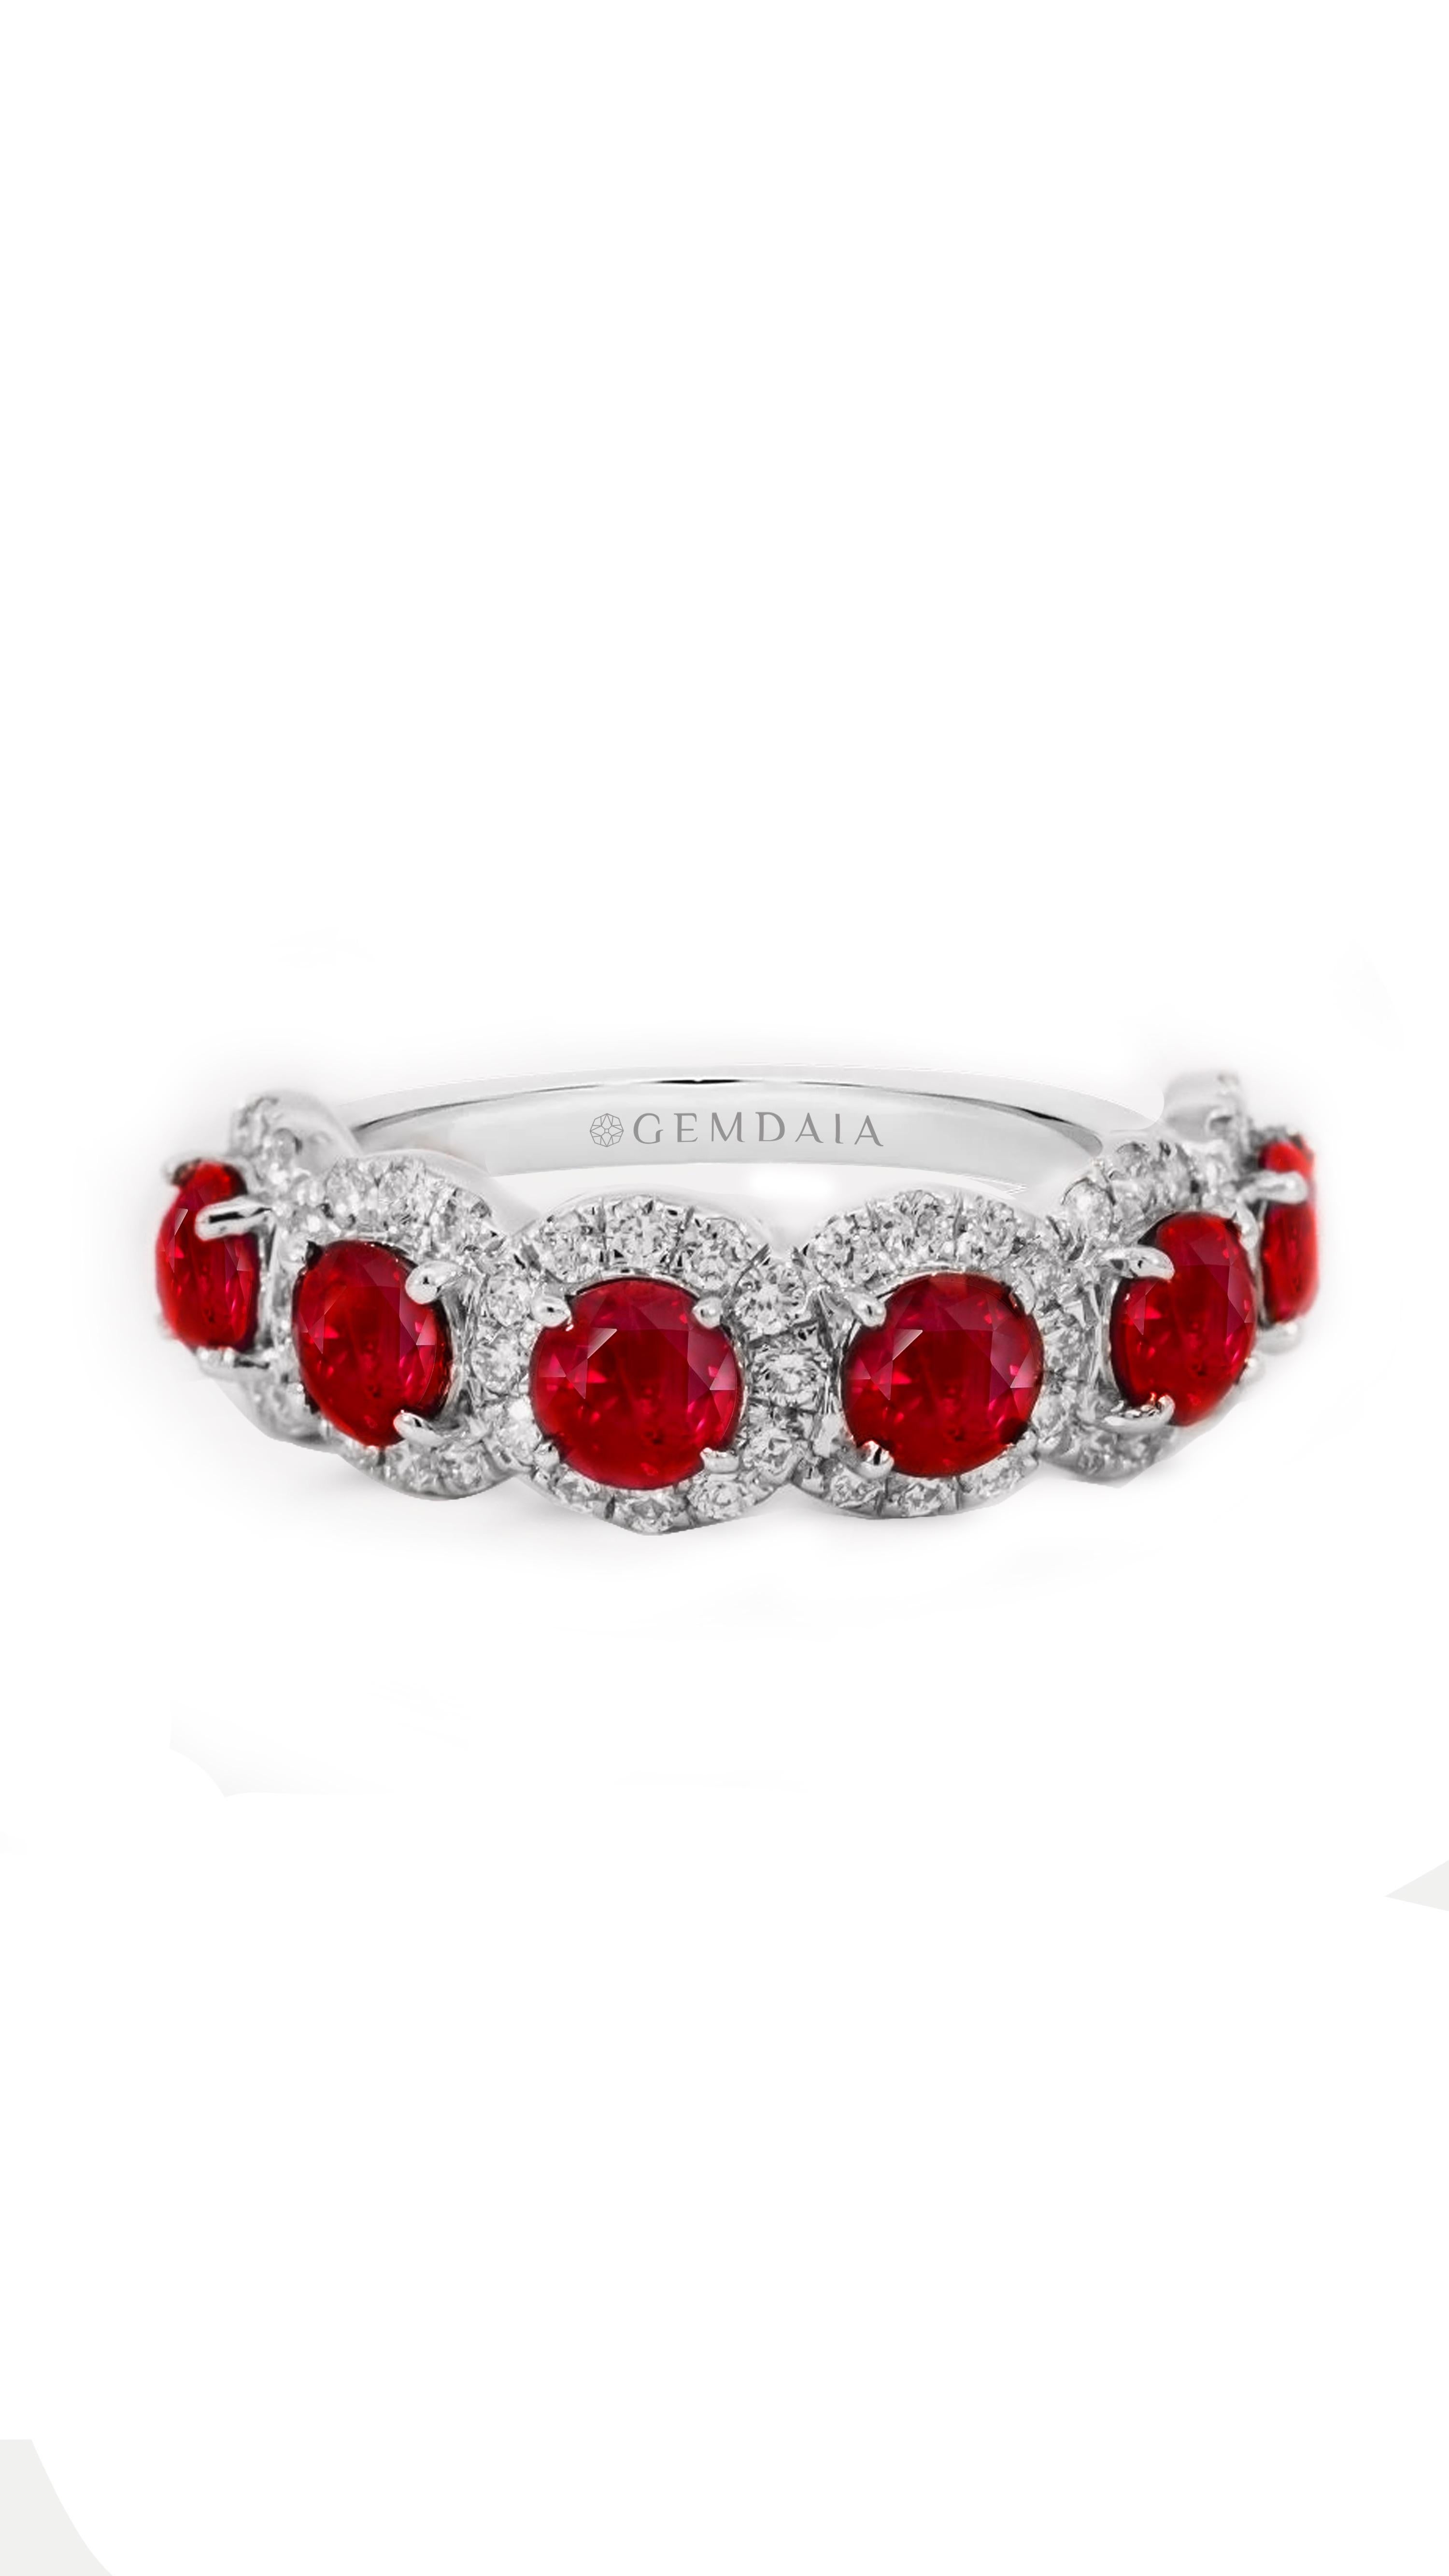 6 feurige, natürliche, leuchtend rote Rubine, umrahmt von schimmernden Diamanten, sorgfältig in massivem Gold gefertigt. Der elegante und raffinierte Duft verkörpert die Essenz feuriger Leidenschaft und Romantik. Dieser Ring eignet sich perfekt für